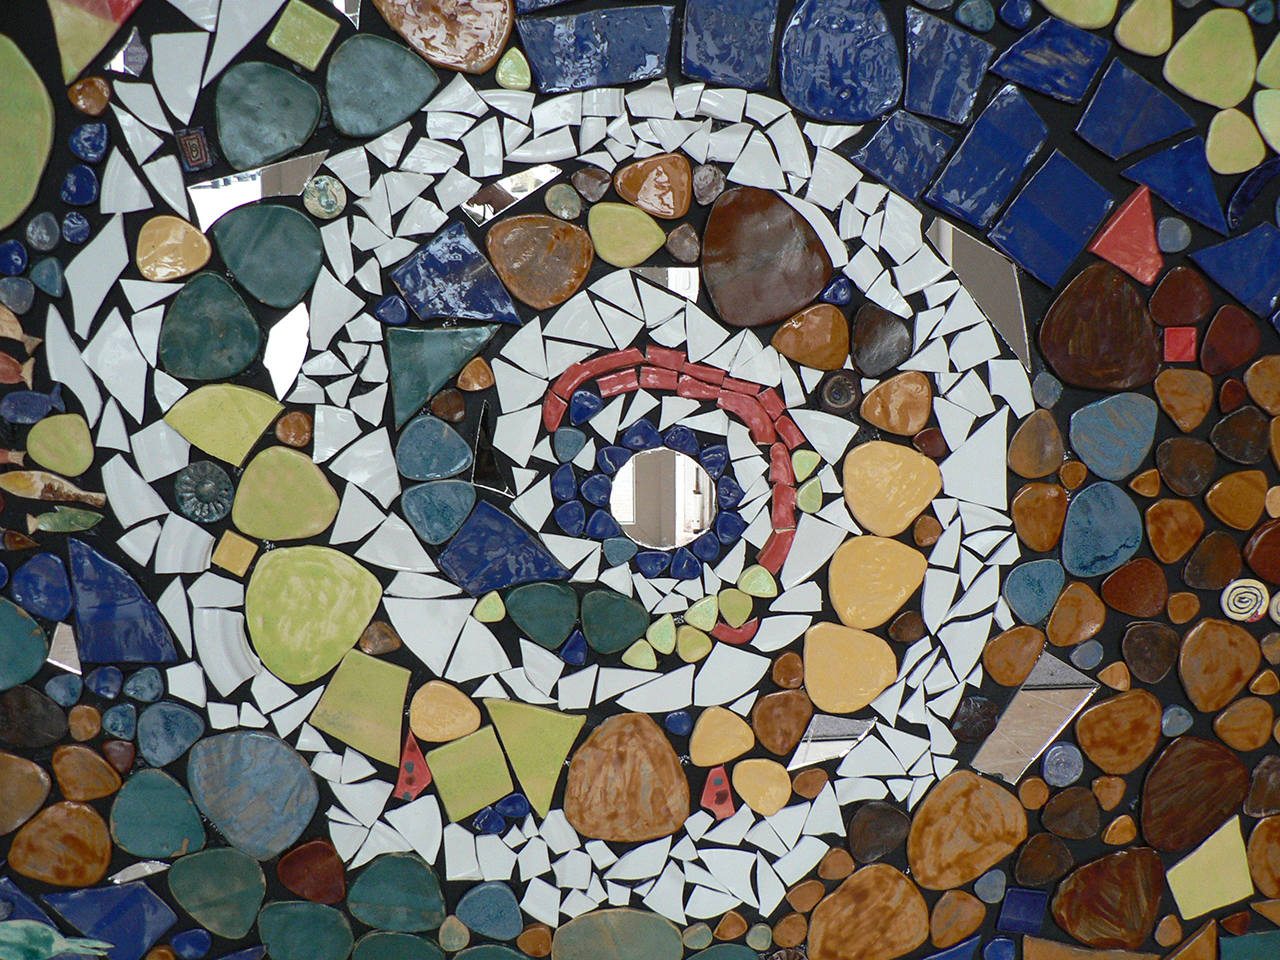 Im Bild zu sehen ist eine kunstvolle Mosaik-Spirale. Sie besteht aus Keramik-Teilen in weiß, blau, braun und rot sowie grün.